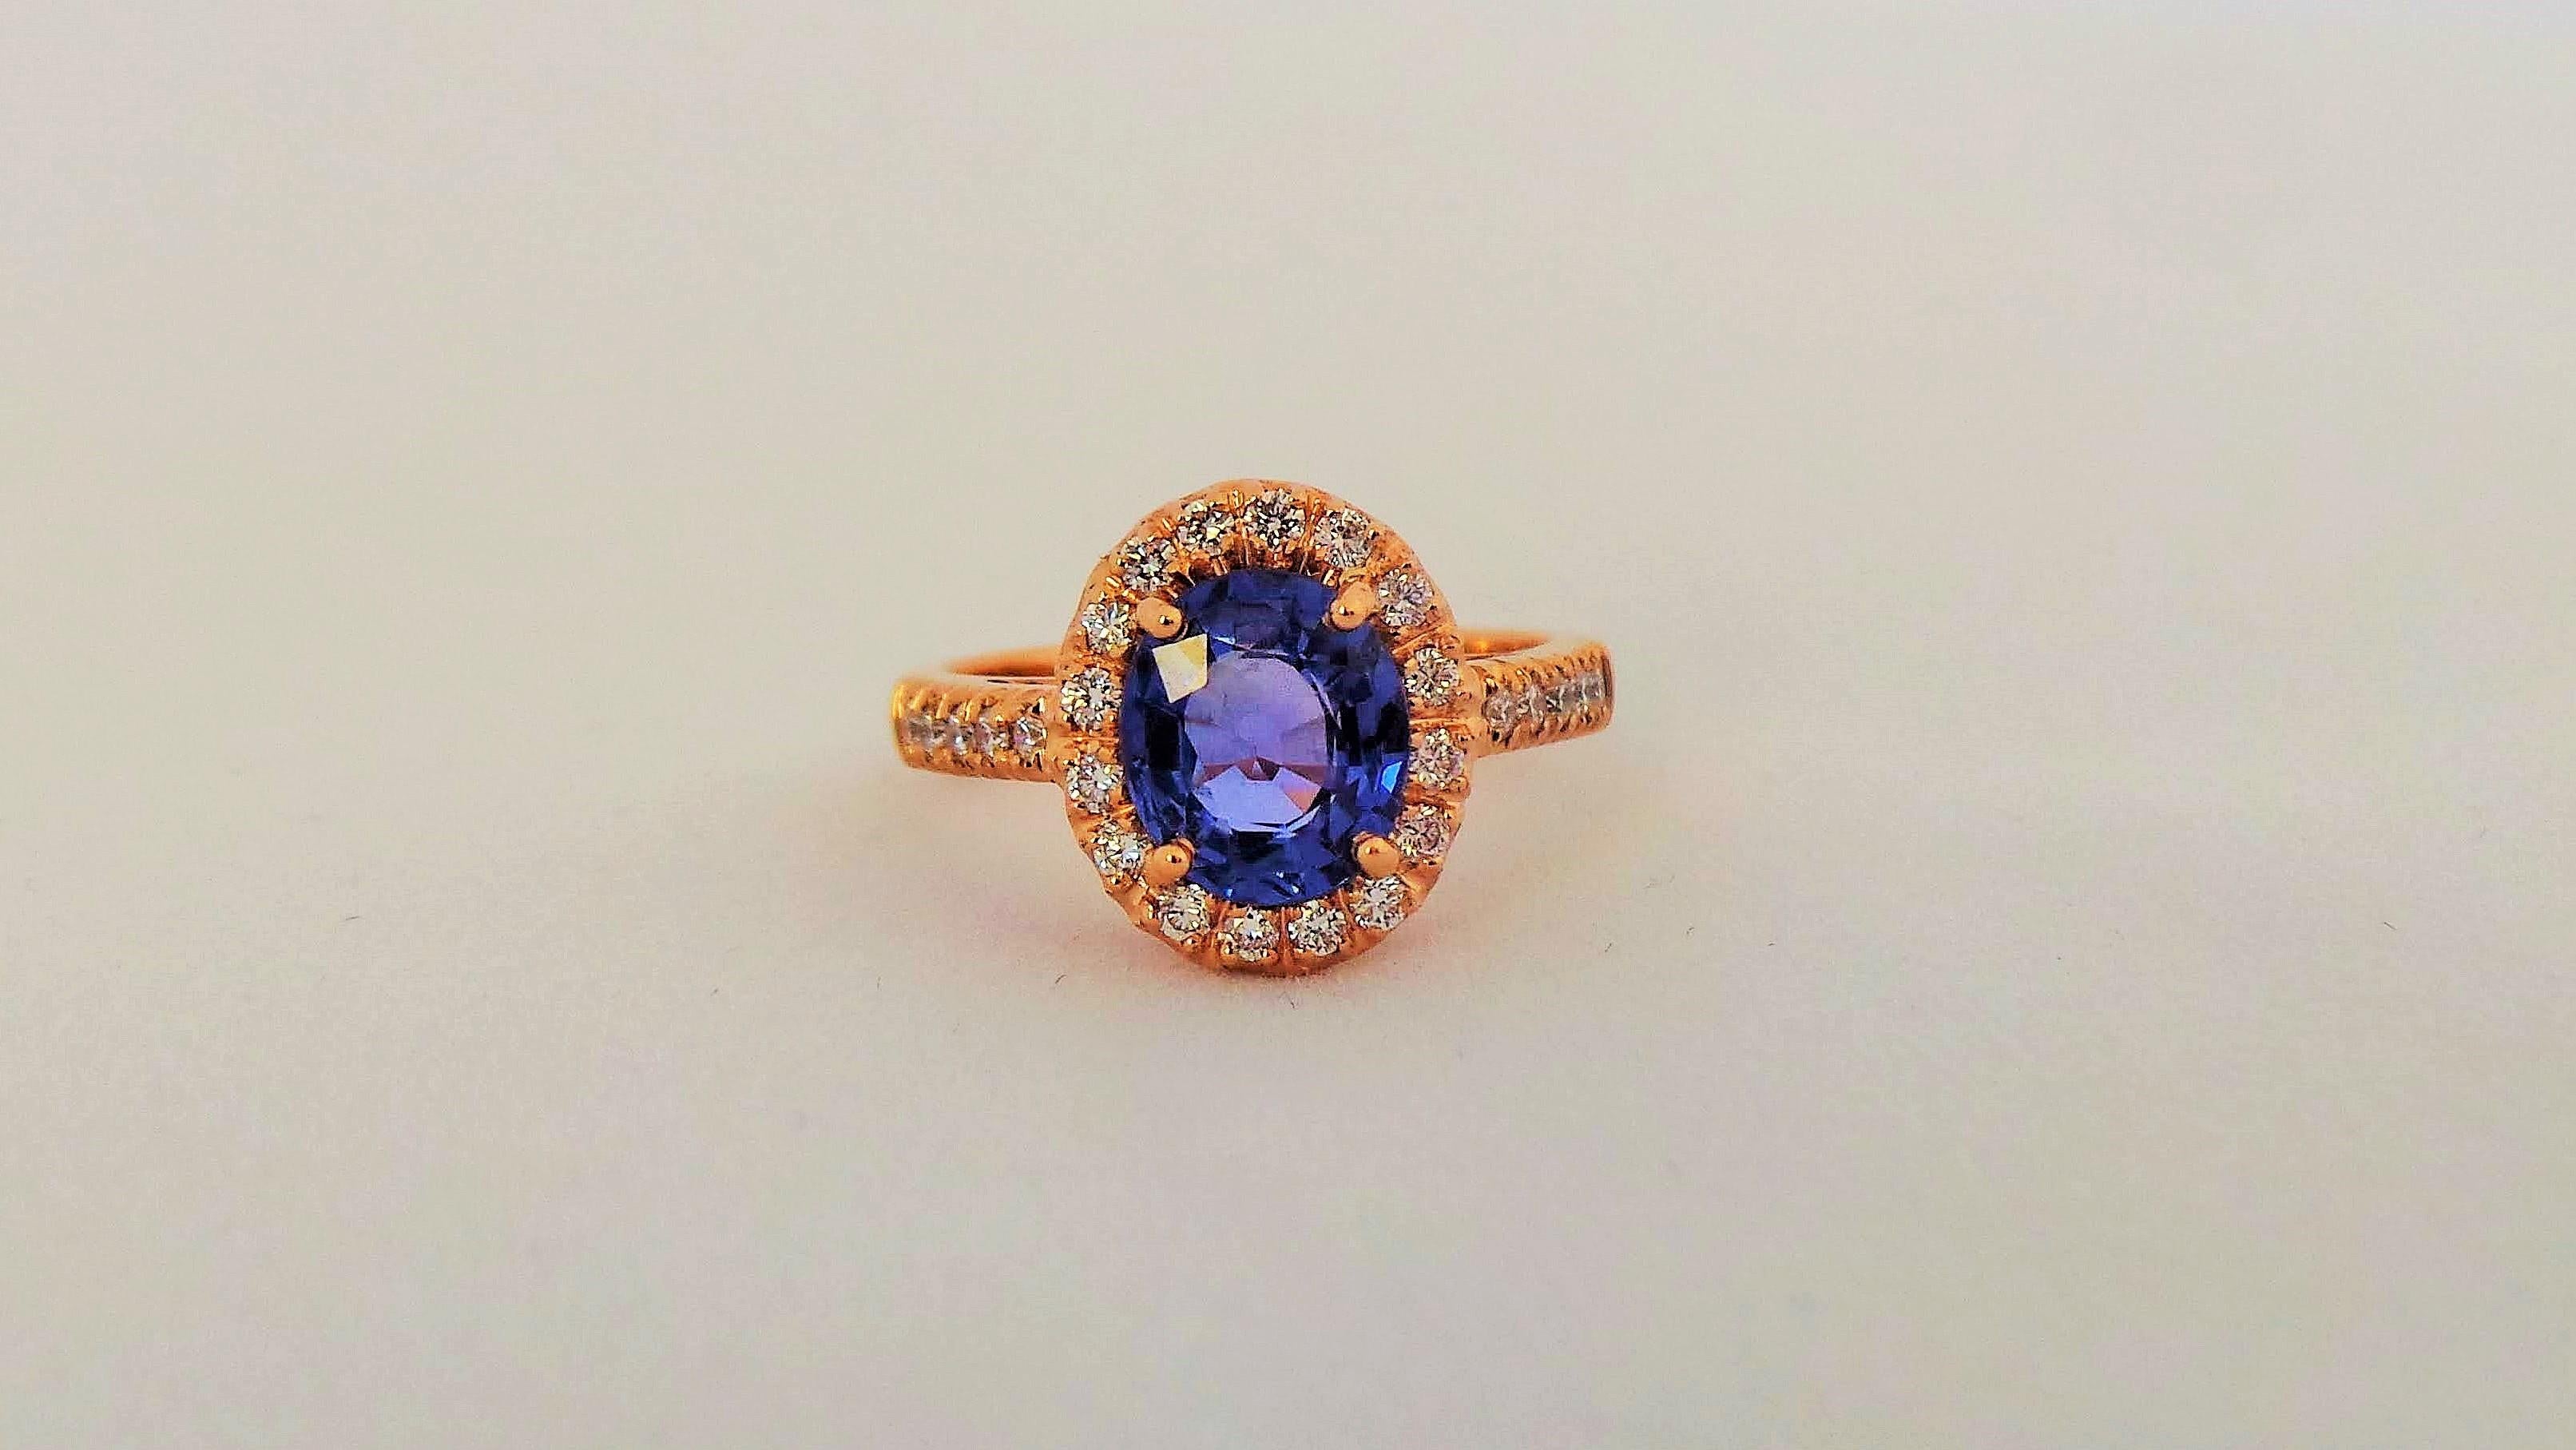 Andrea Macinai entwirft eine eigene Kollektion für Verlobungsringe  mit einem schönen blauen Saphir  und Diamant.
Der Ring wurde in Anlehnung an die natürliche Linie des Steins entworfen und gefertigt.
Dieser zeitlose Ring mit seinen klaren,